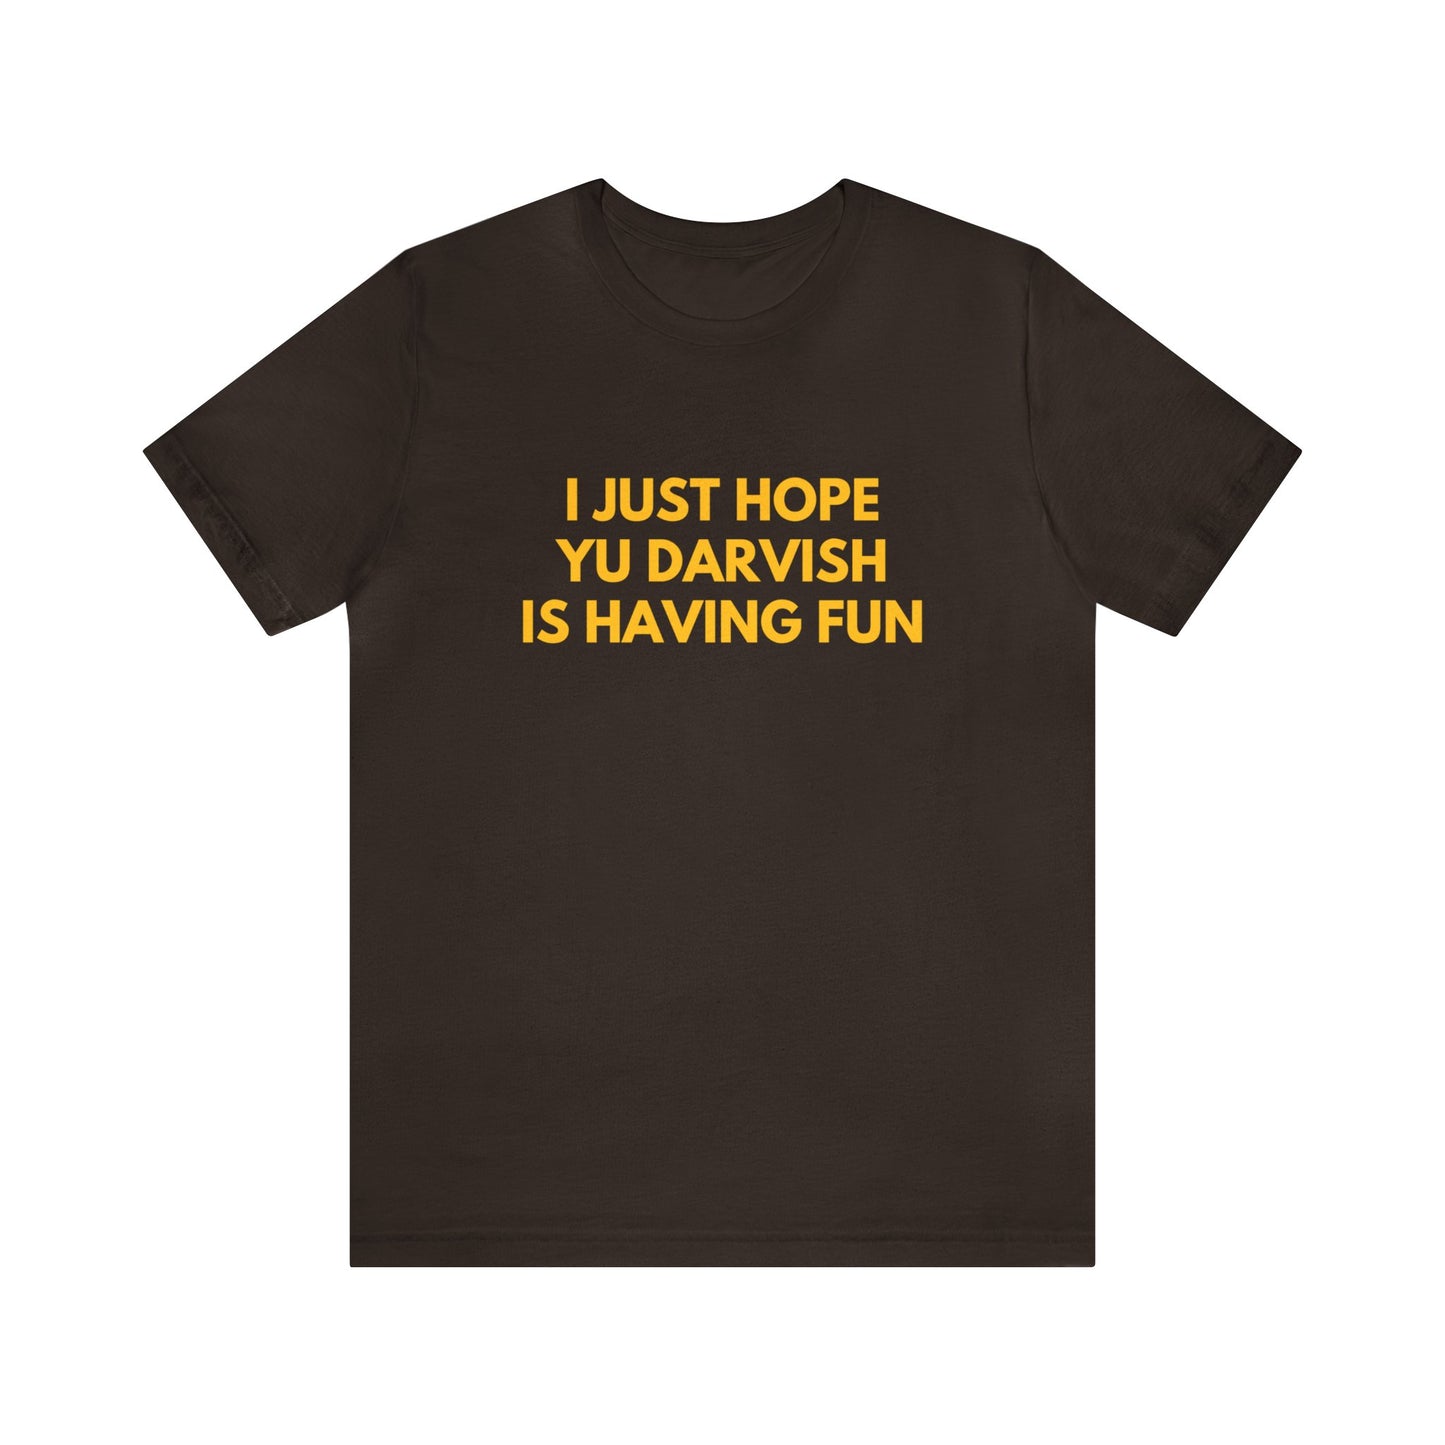 Yu Darvish Having Fun - Unisex T-Shirt